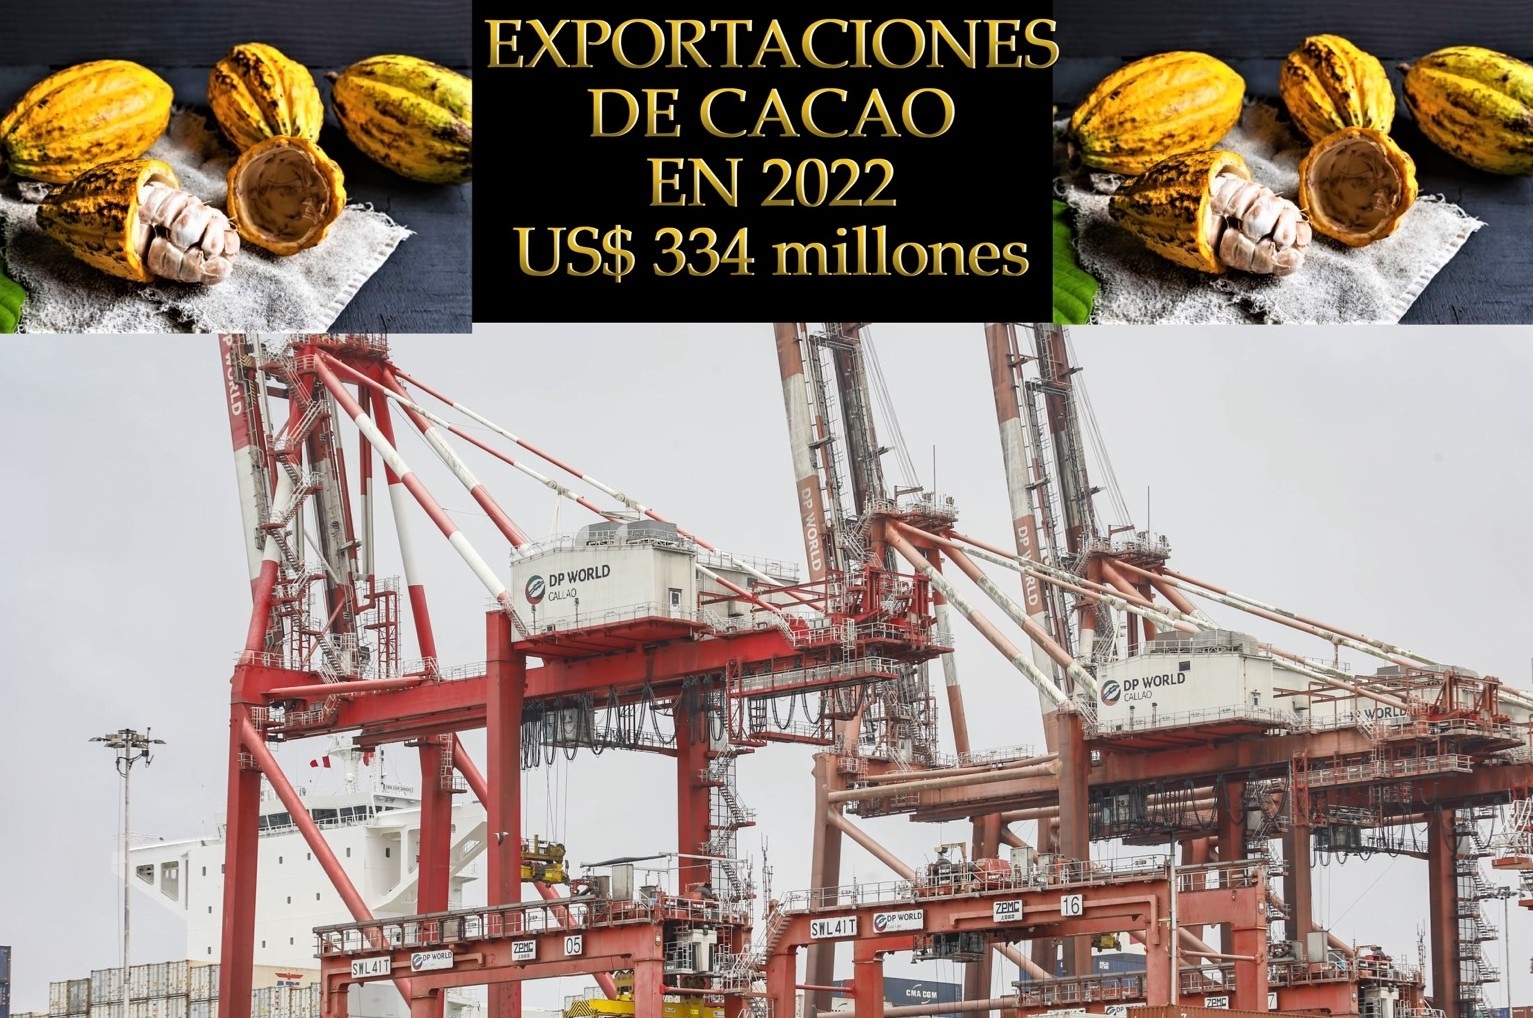 Exportaciones de cacao en crecimiento por su calidad y elementos diferenciados, en el año 2022 envíos ascendieron a casi US$ 334 millones.